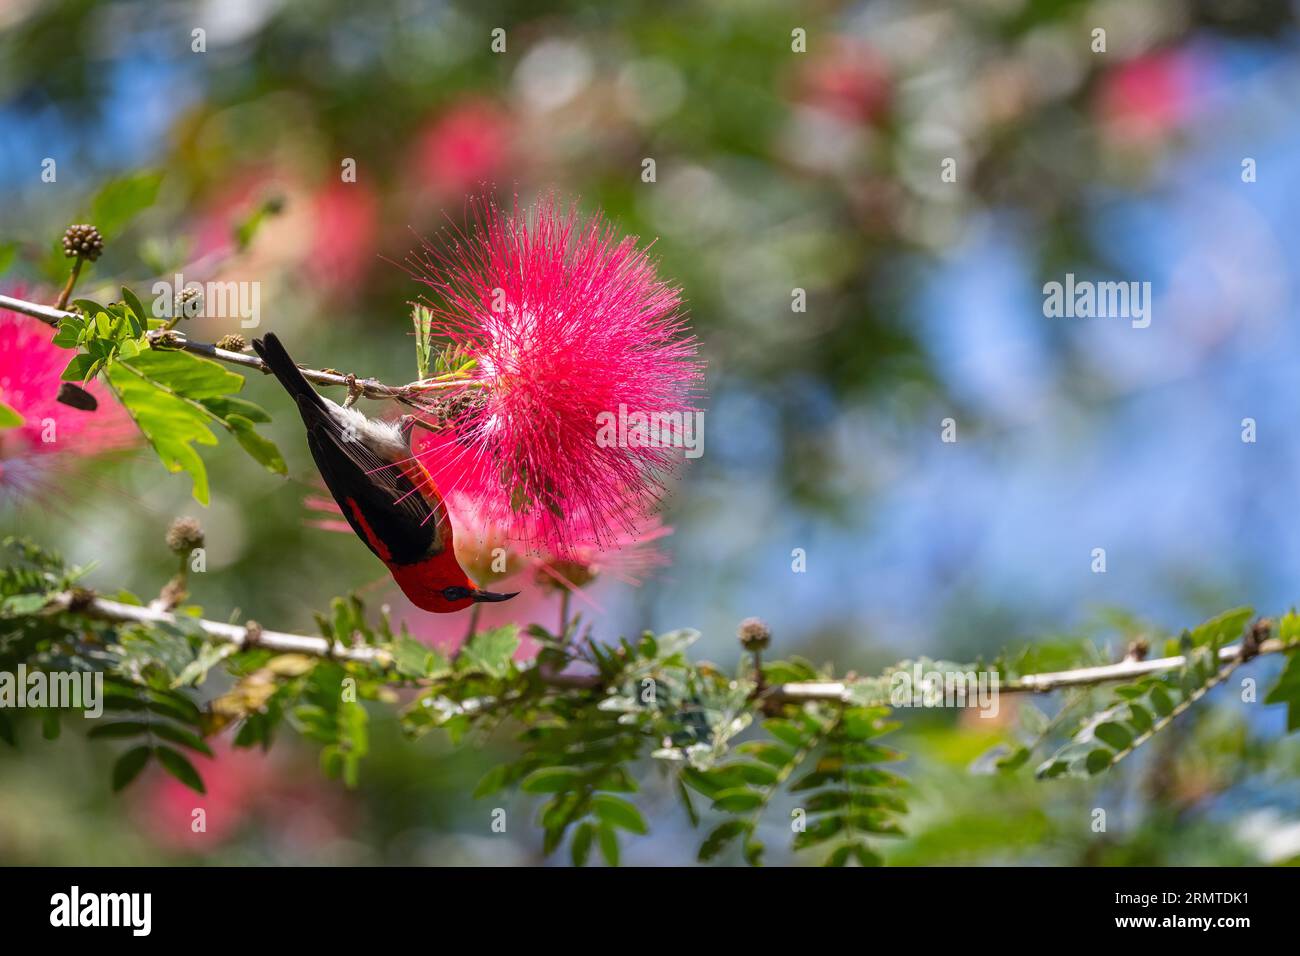 Appeso a testa in giù, uno Scarlet Honeyeater di recente arrivo contempla la possibilità di nutrirsi della fioritura di un arbusto di polvere rossa. Foto Stock